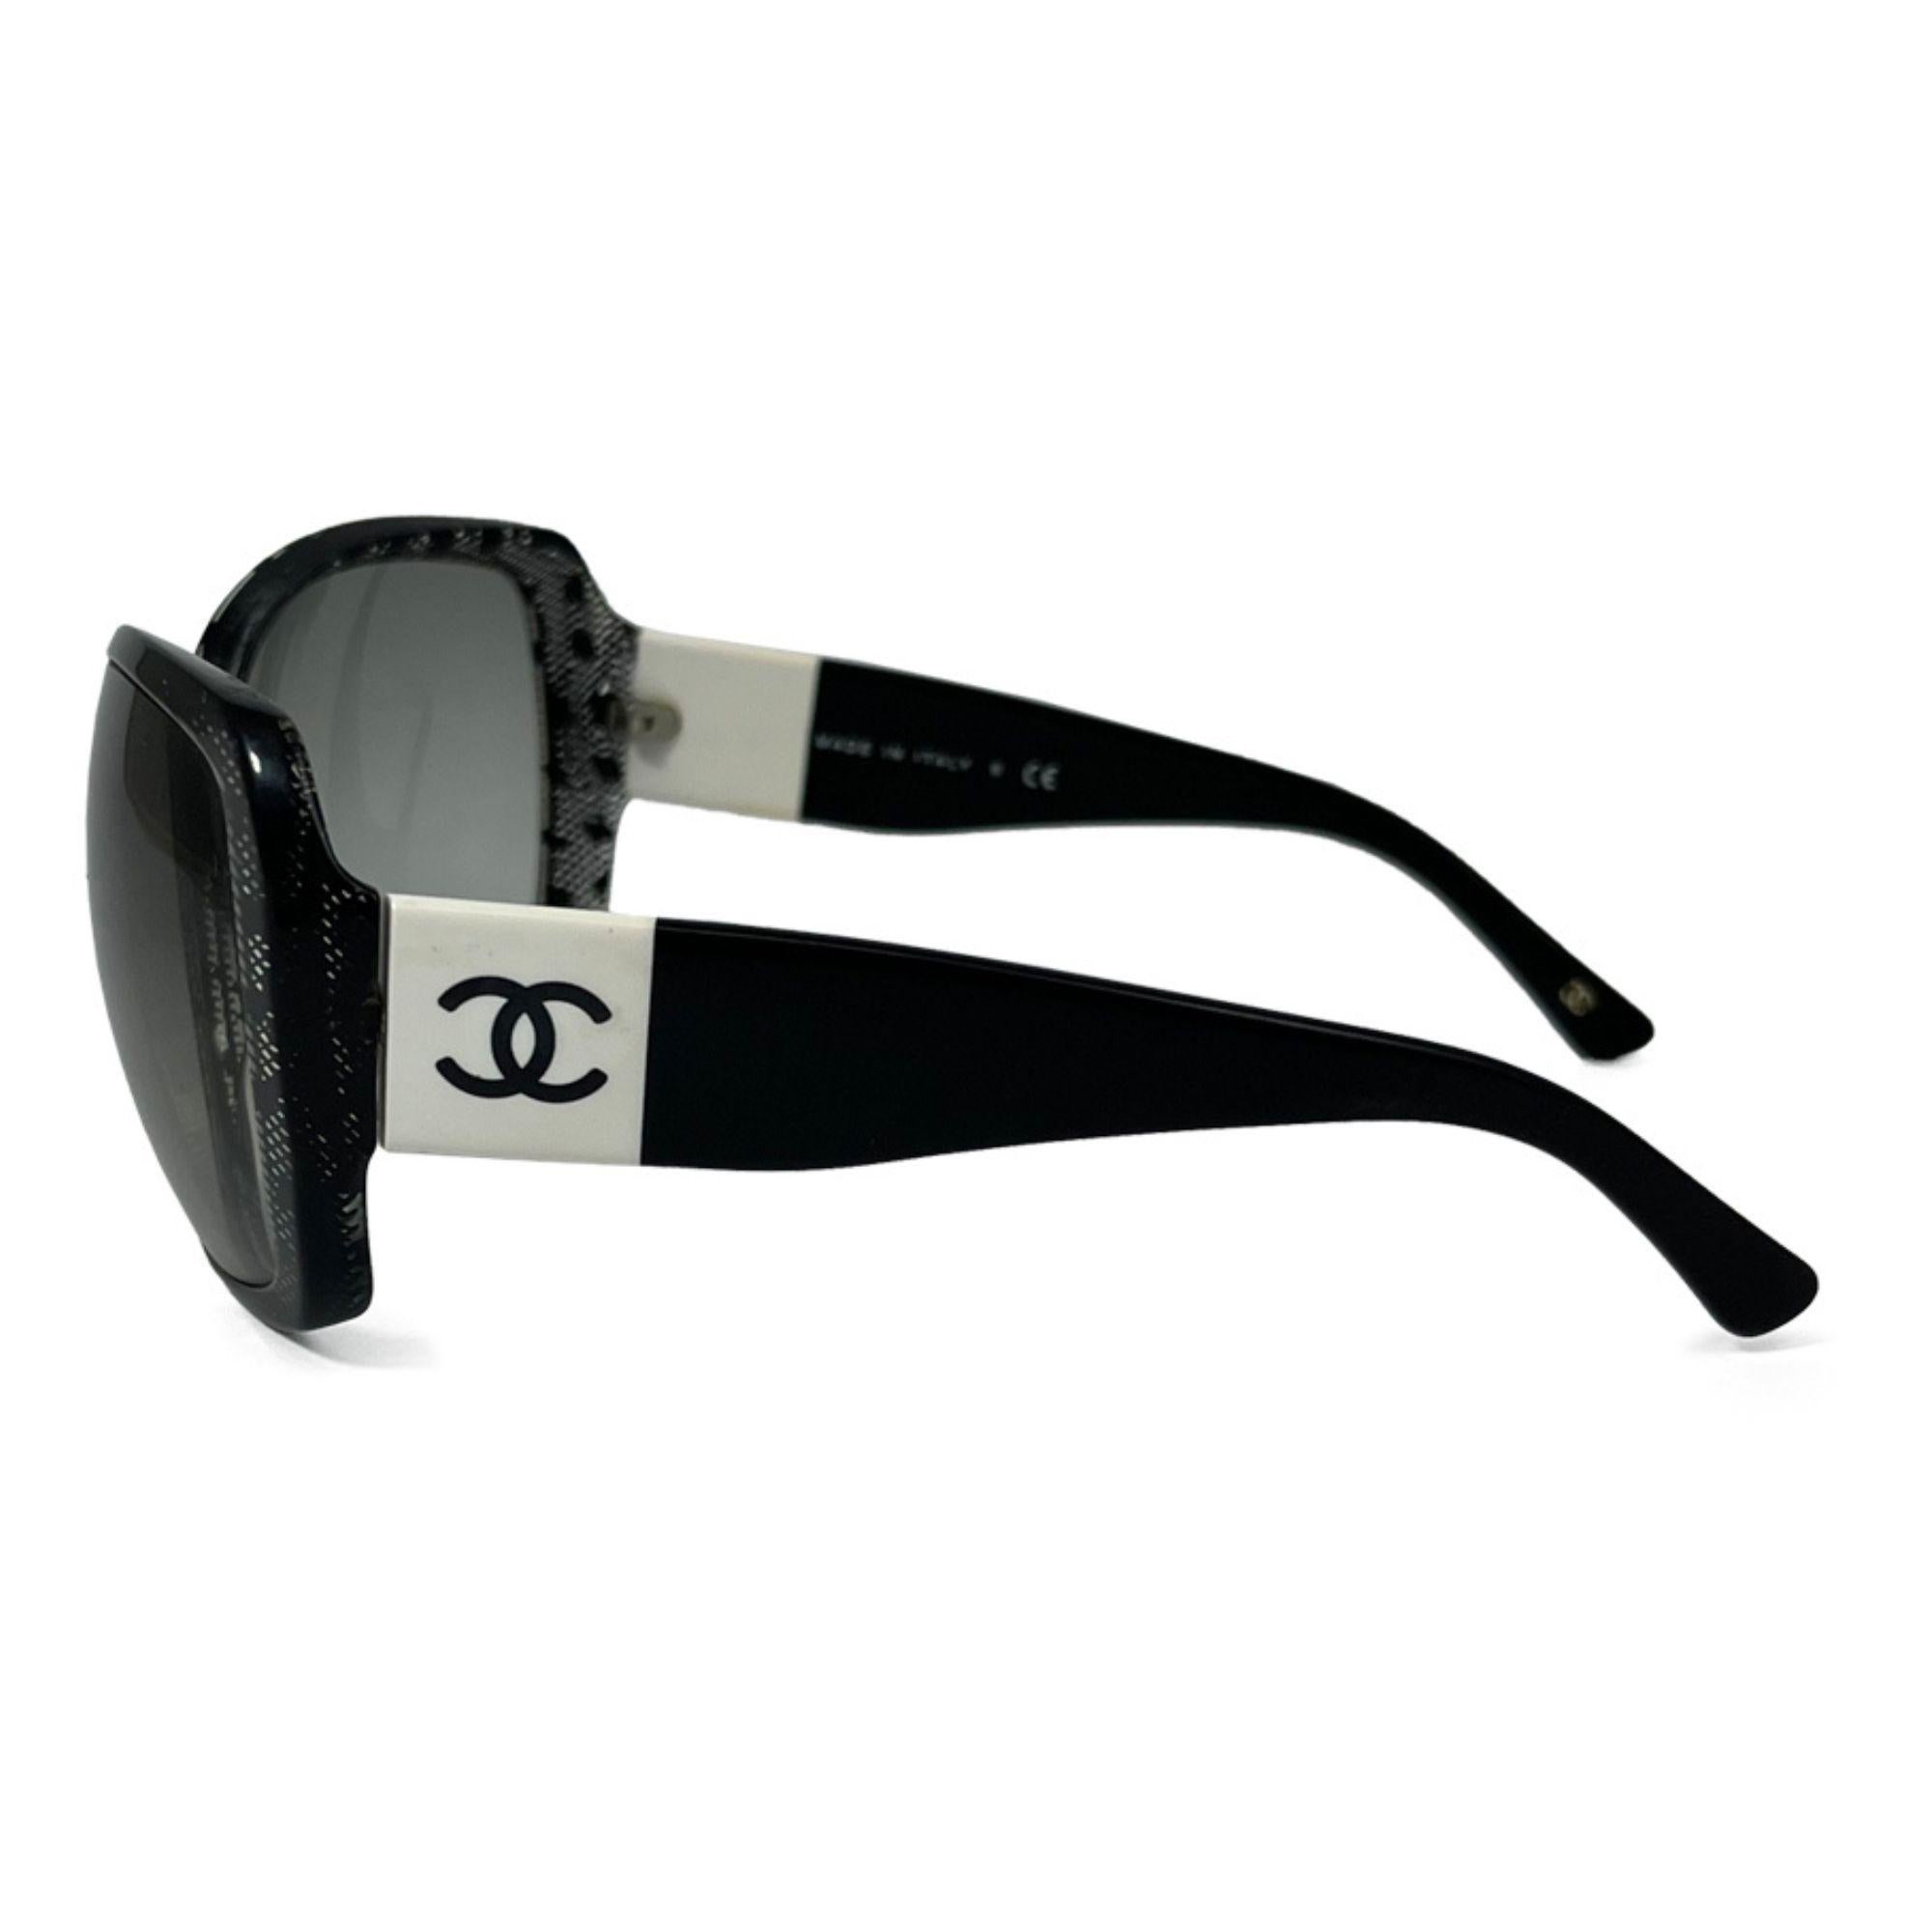 Chanel Spitzen-CC-Sonnenbrille Schwarz 5145. Mit schwarzem Rahmen mit großen quadratischen Rändern und Gläsern mit grauem Farbverlauf. Die Arme sind mittelbreit mit einem weißen Band und einem schwarzen Chanel CC-Logo.

Hardware: Acetat
Linse: